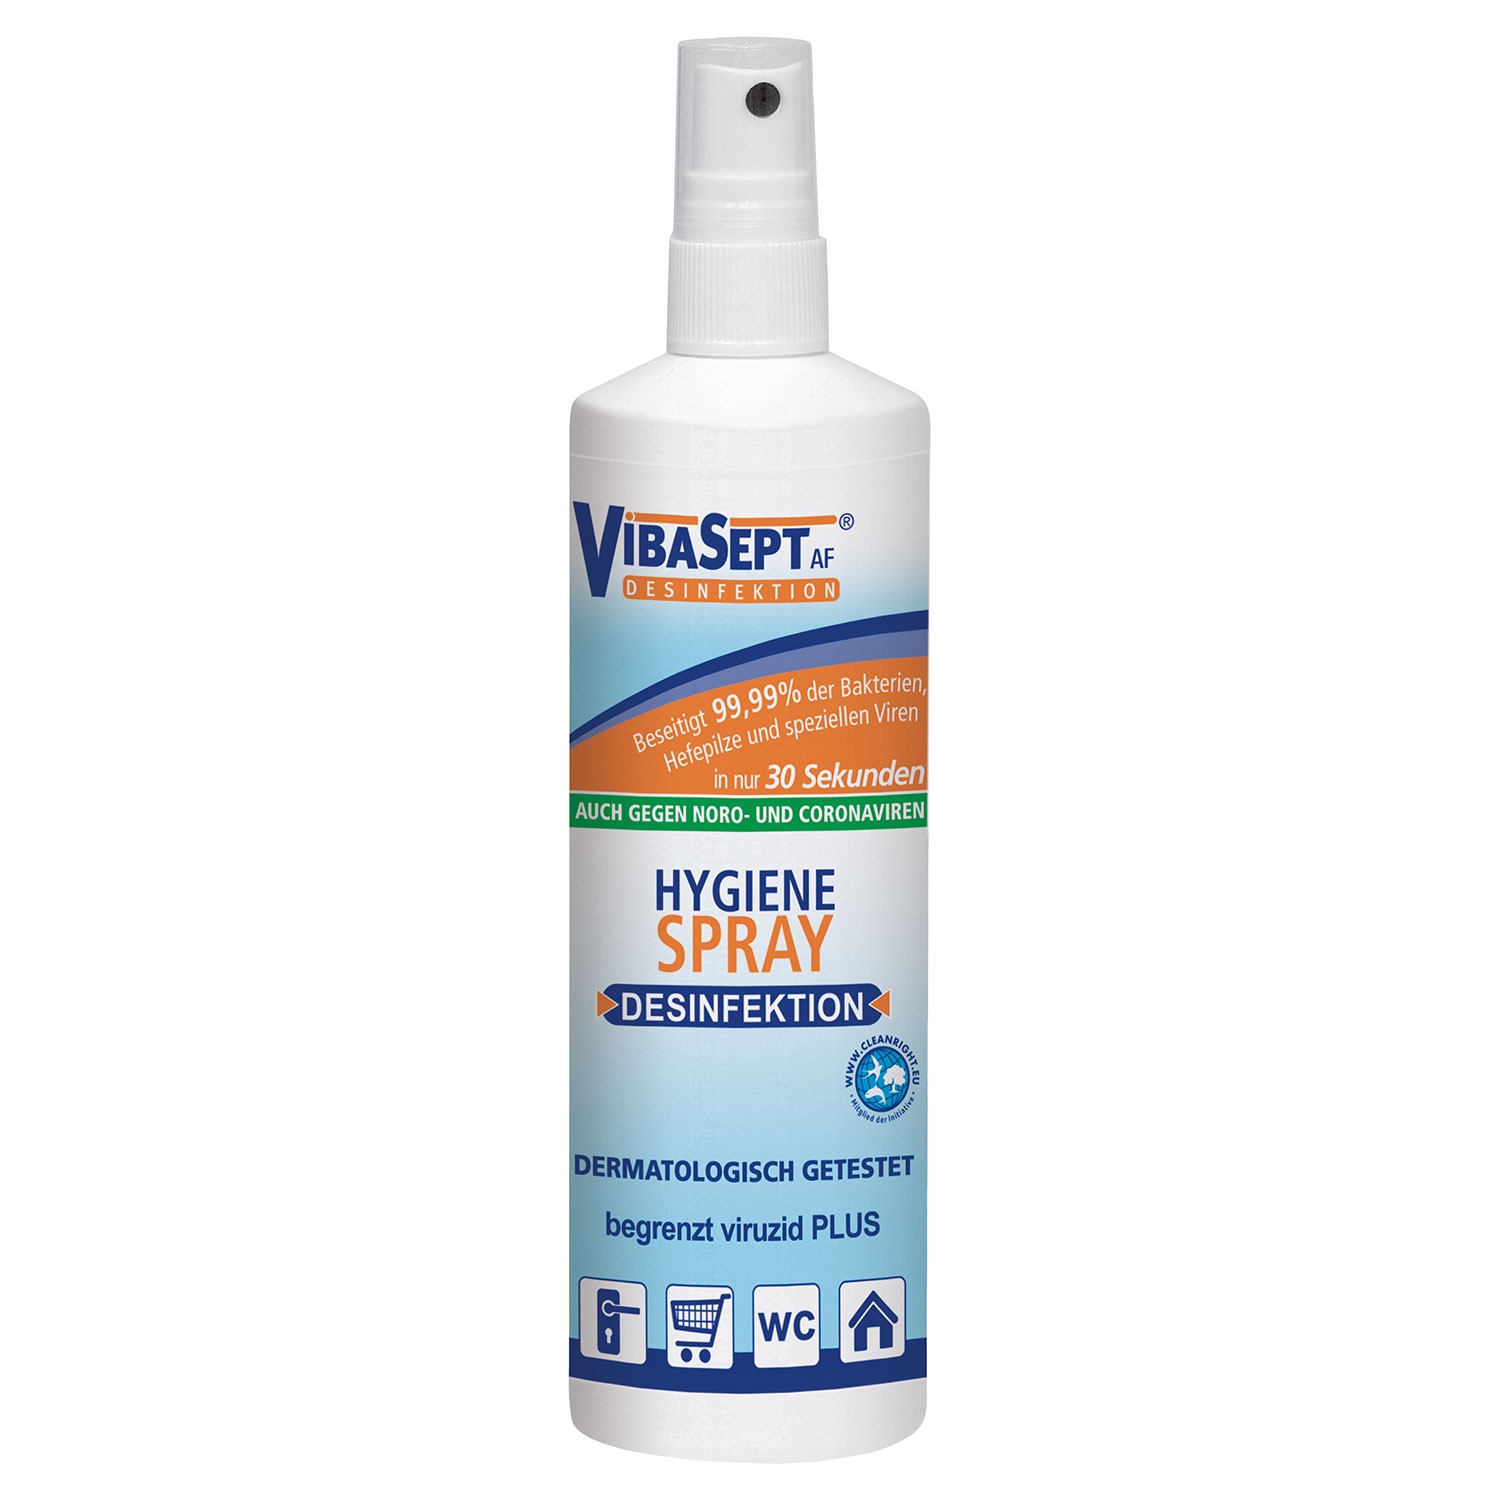 VIBASEPT AF® Hygiene-Spray 250 ml